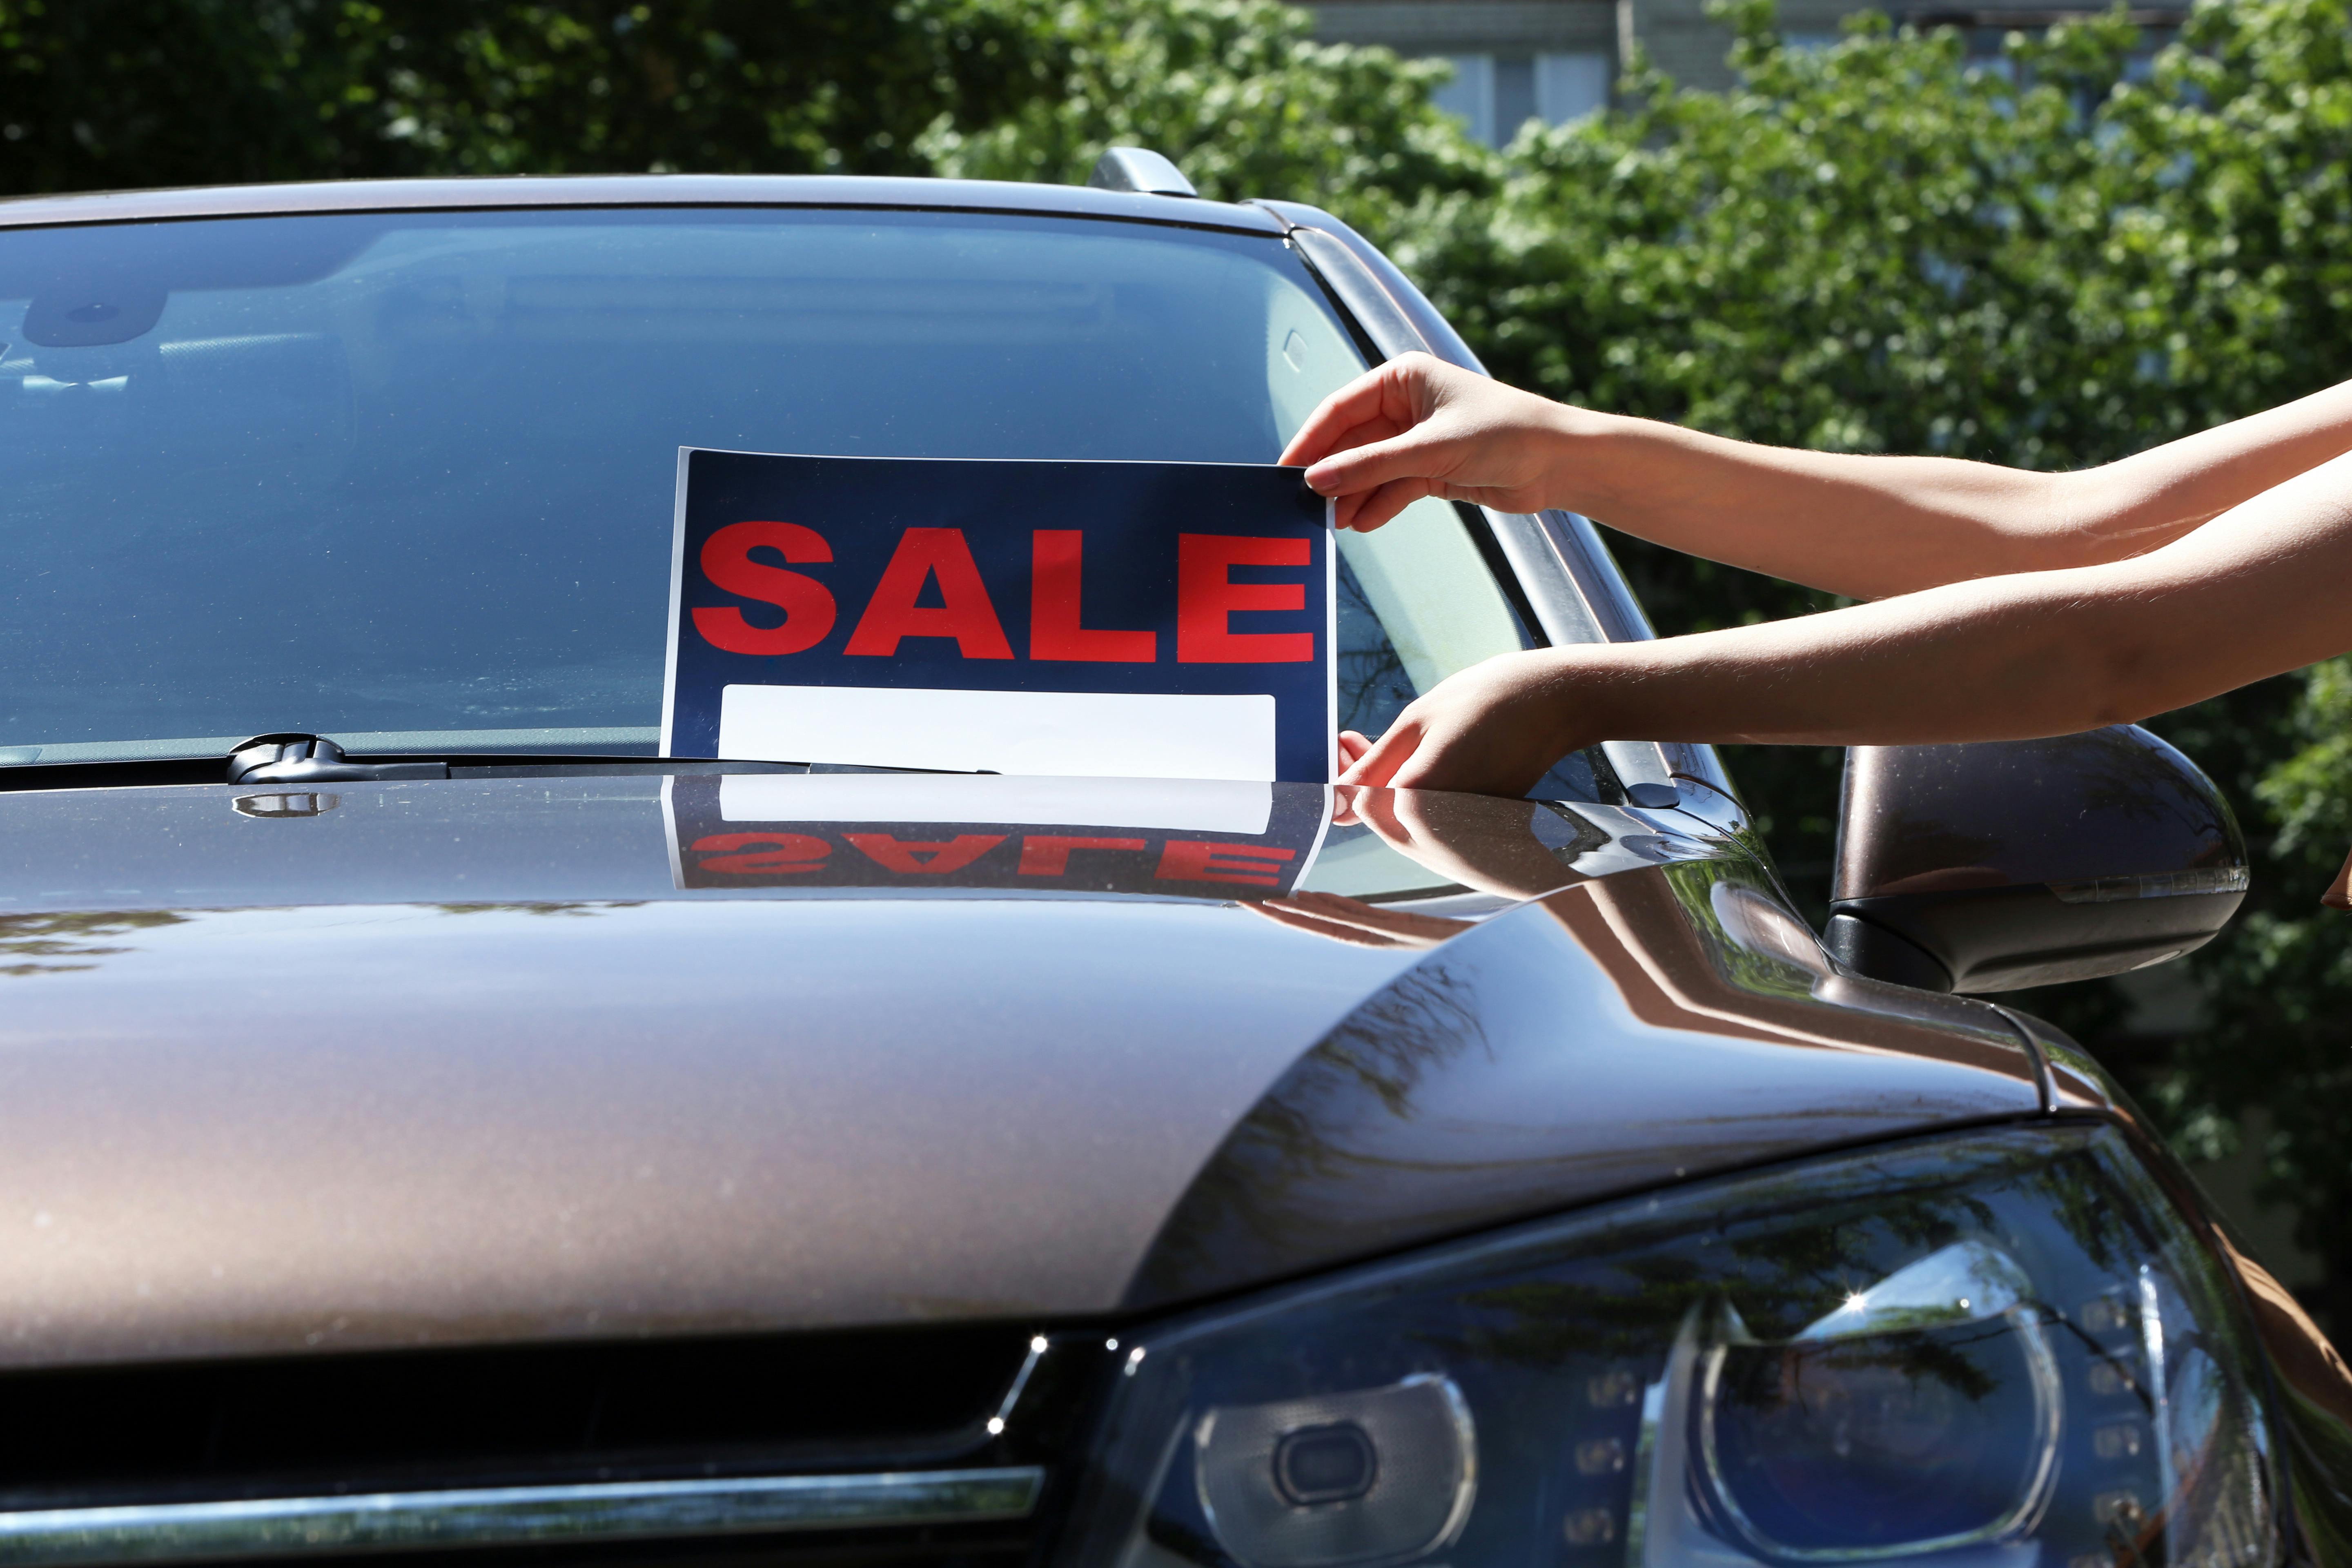 Быстрая продажа машины. Таблички продается автомобиль. Знаки авто продажи. Символы продажа автомобиля. Sold на машинах.